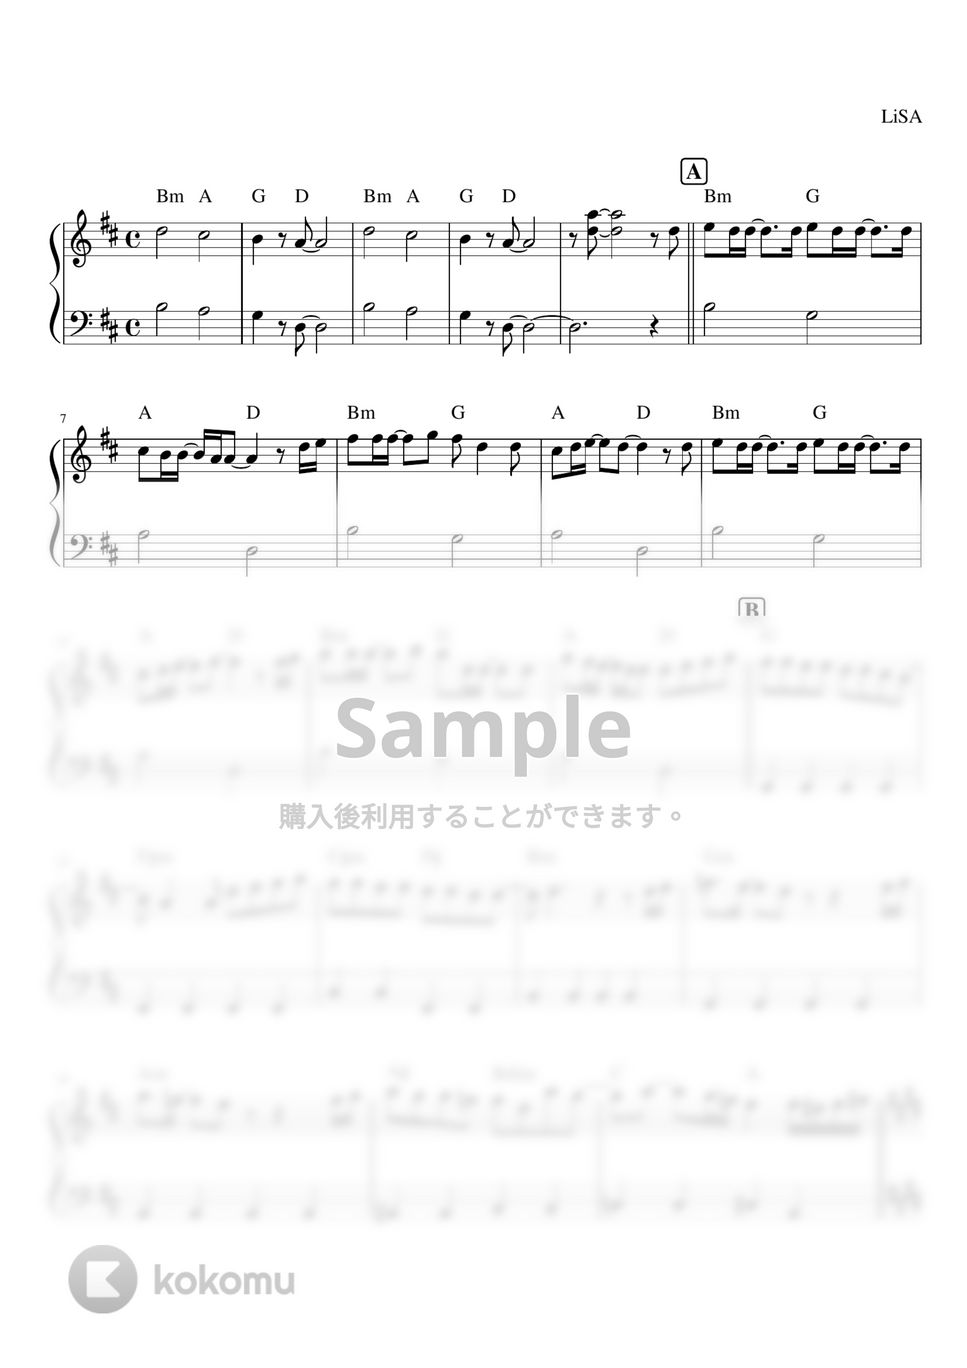 LiSA - 炎 (ピアノソロ初級レッスン) by orinpia music